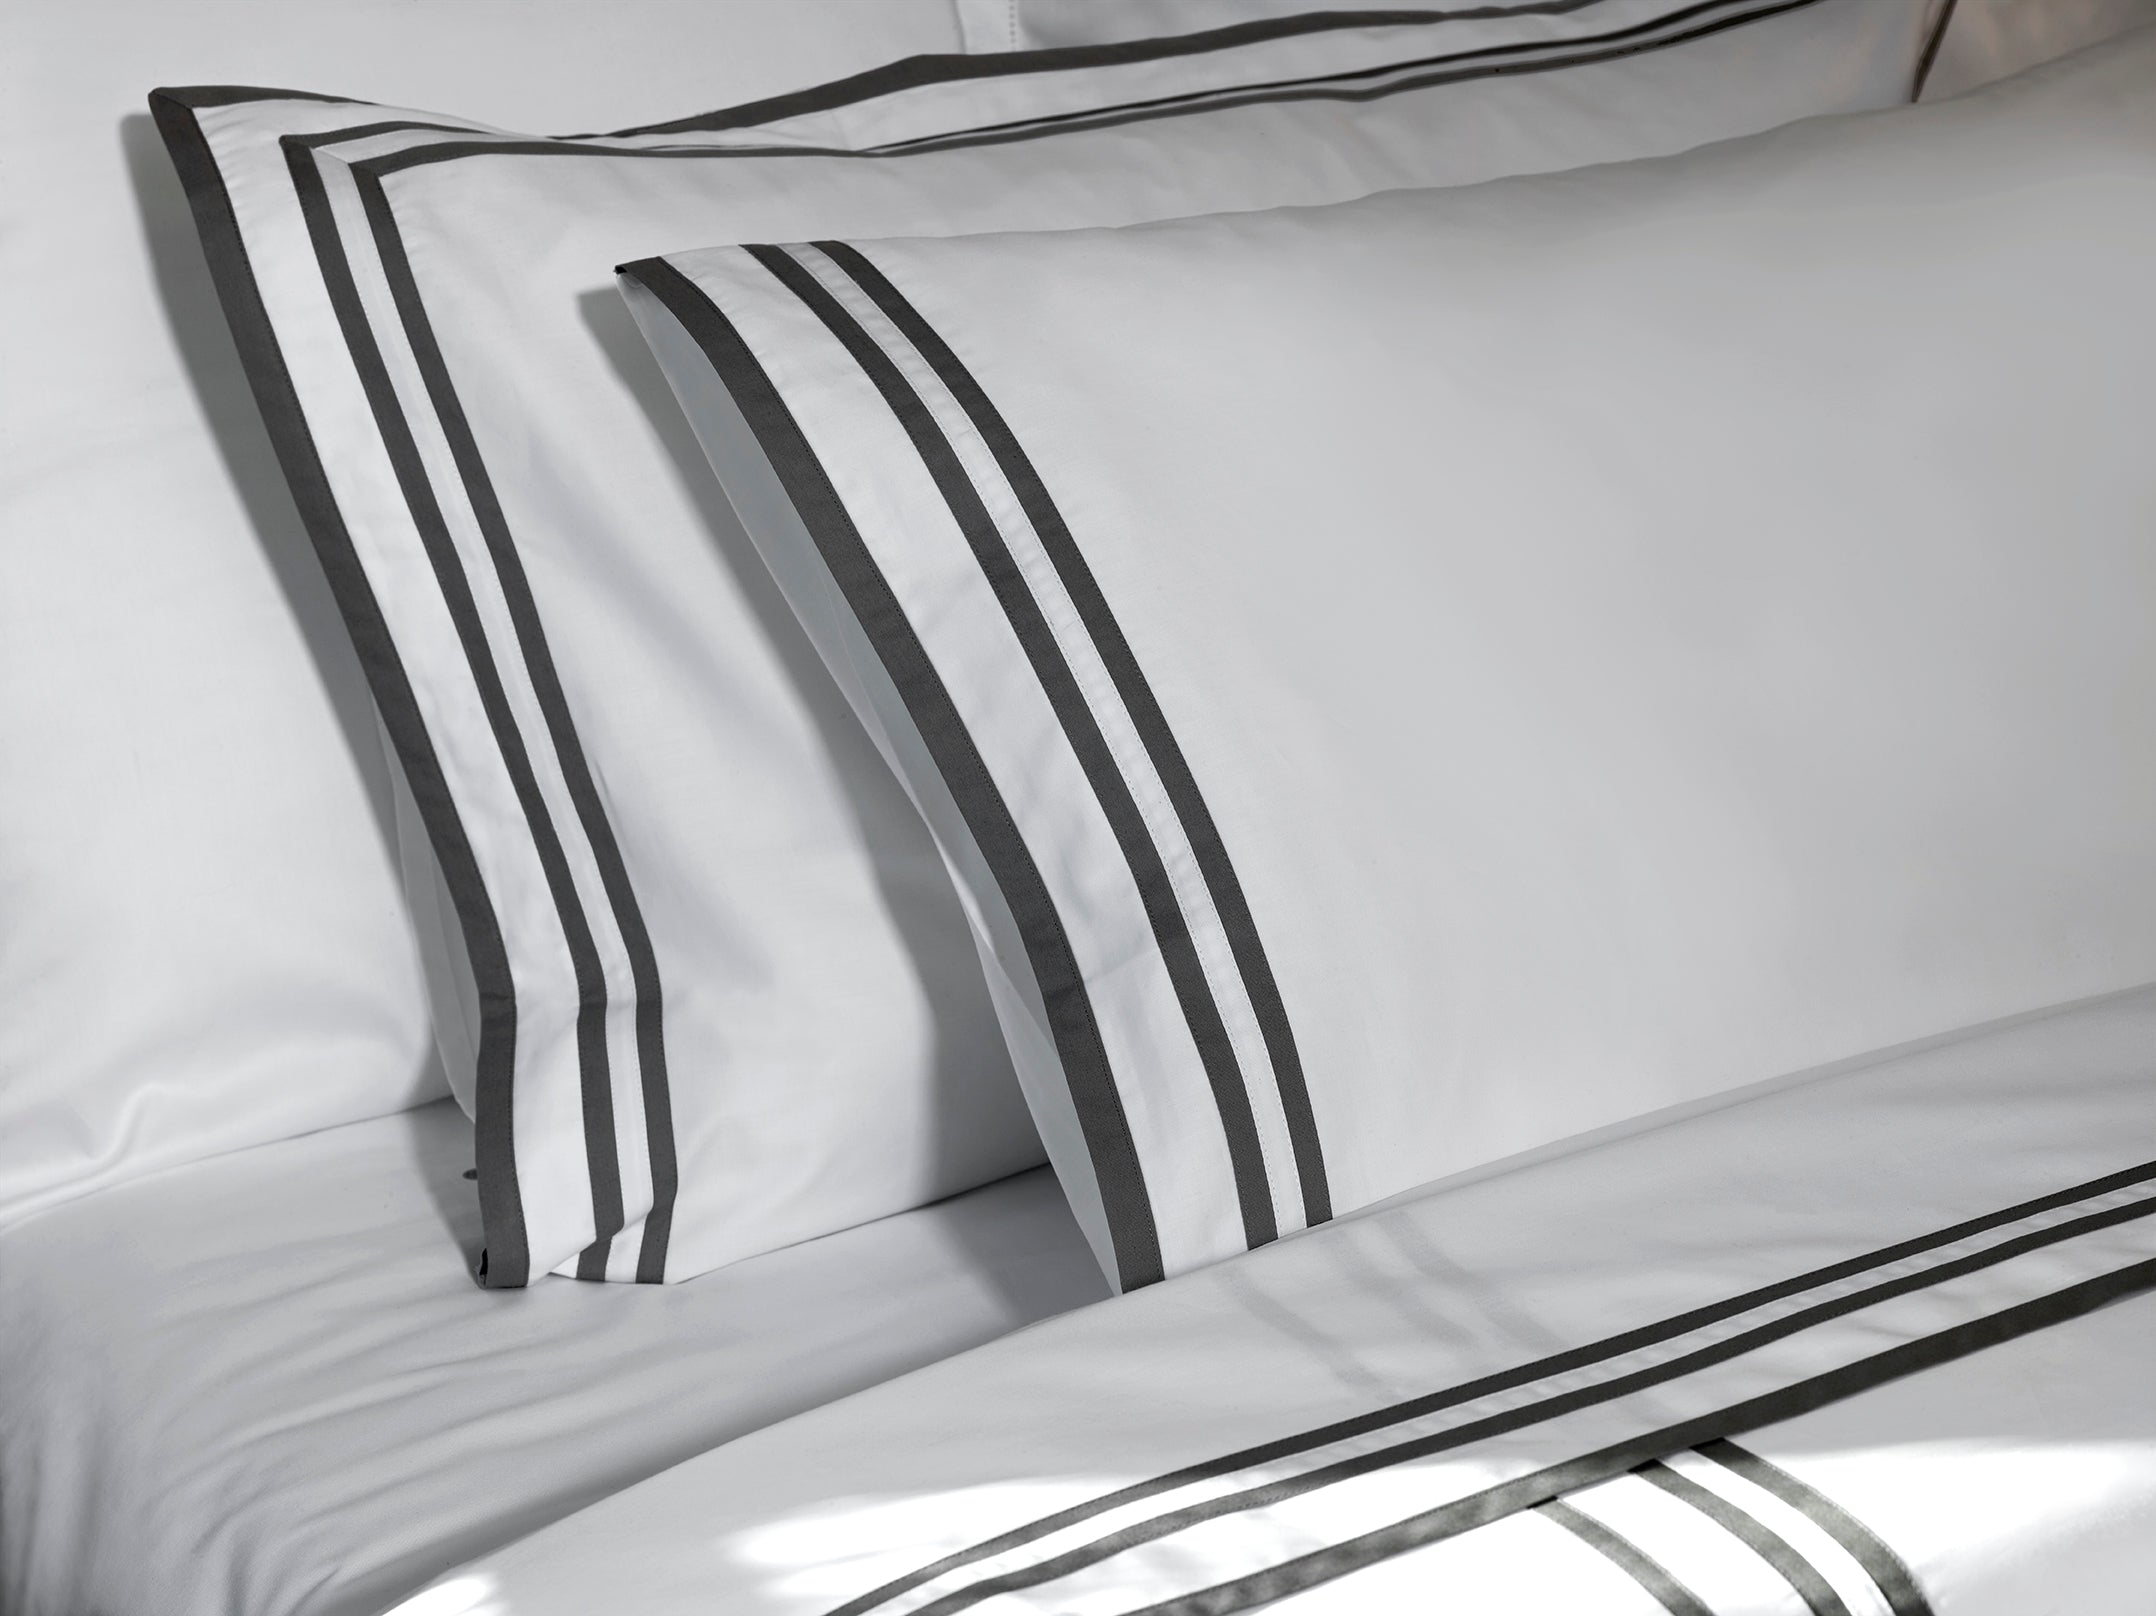 430TC Sateen Striped Pillowcase Set | Amalia Home Sonata  | Oroa.com